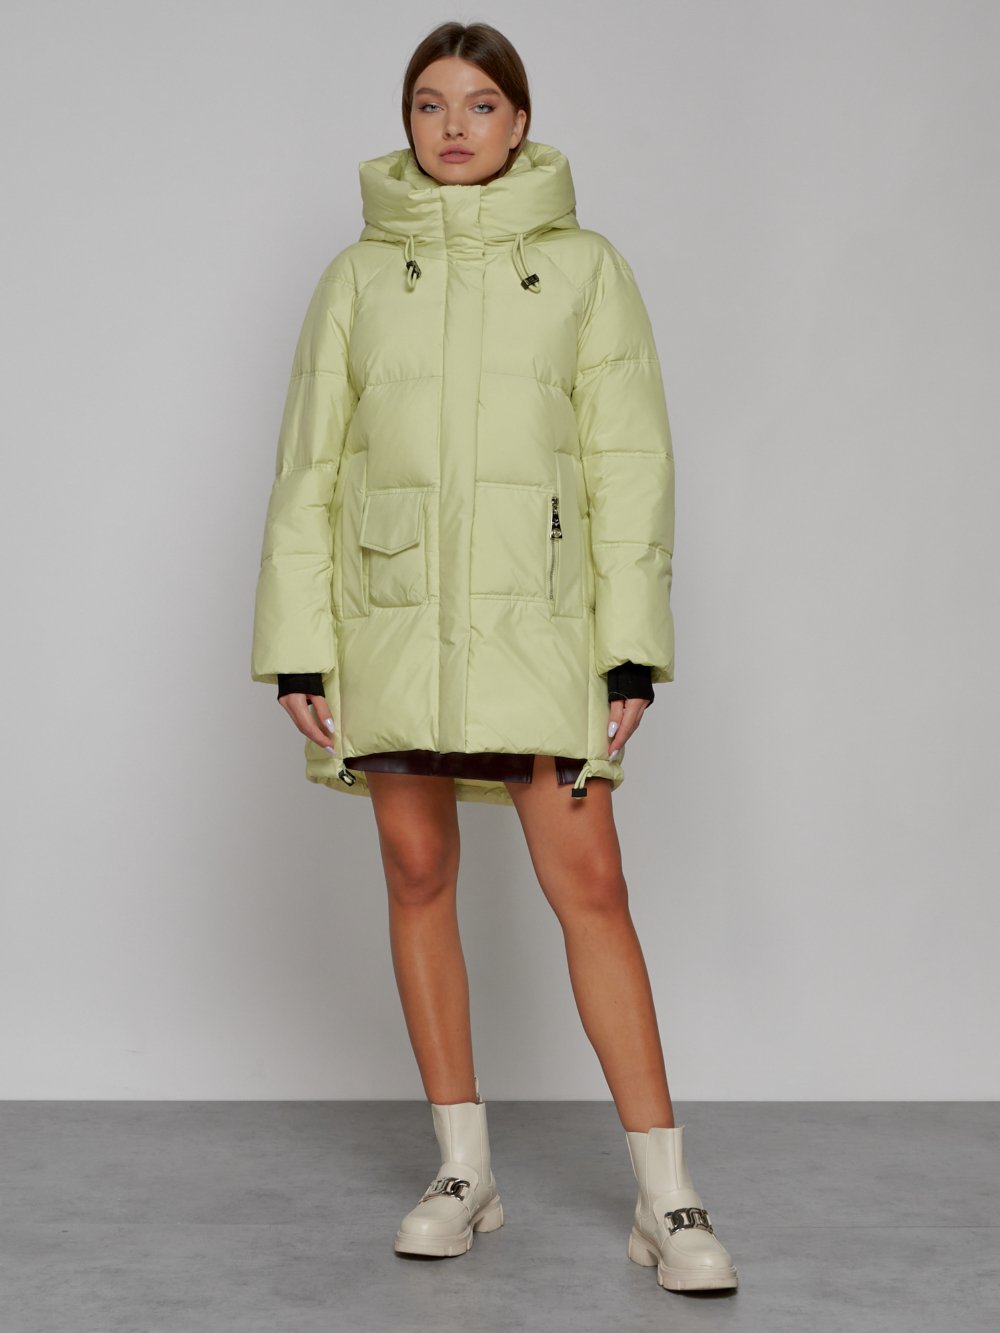 Купить оптом Зимняя женская куртка модная с капюшоном салатового цвета 51122Sl в Екатеринбурге